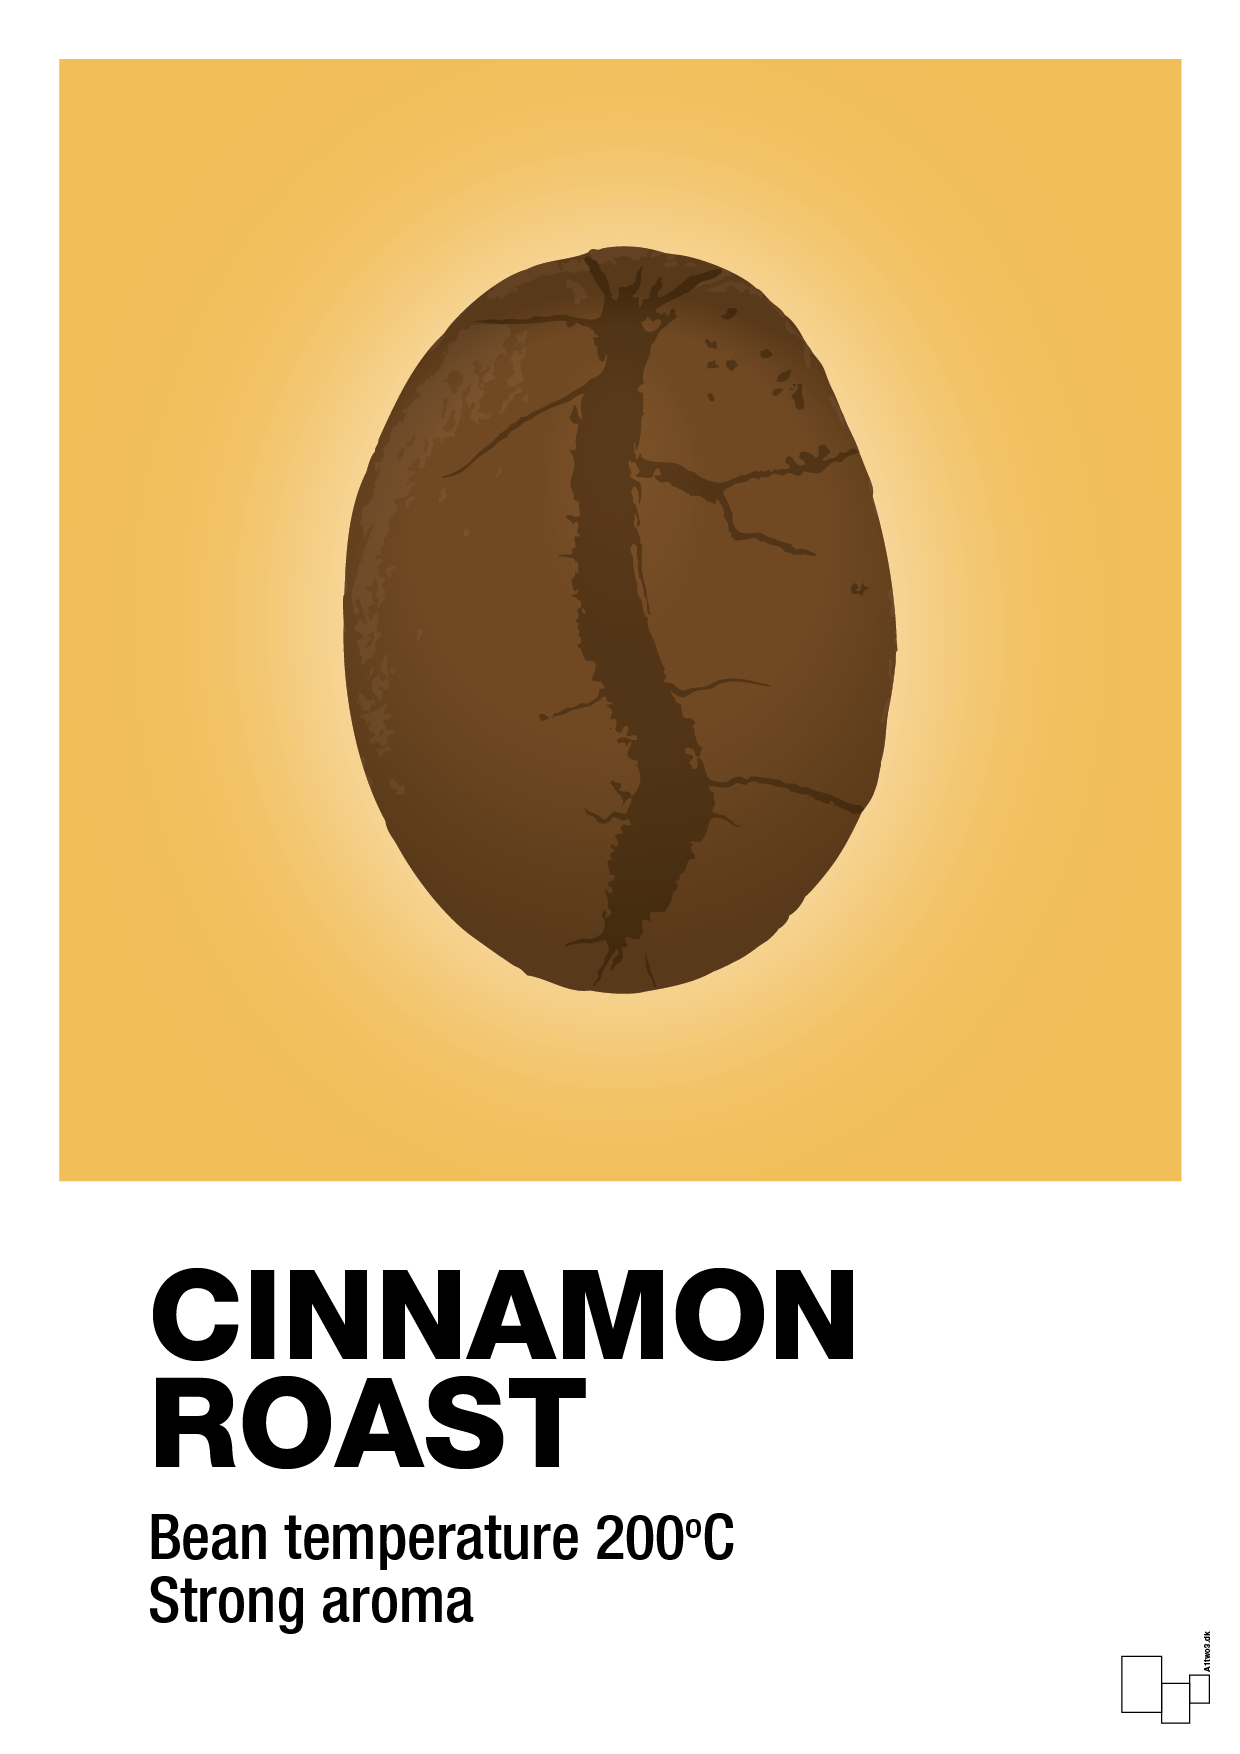 cinnamom roast - Plakat med Mad & Drikke i Honeycomb